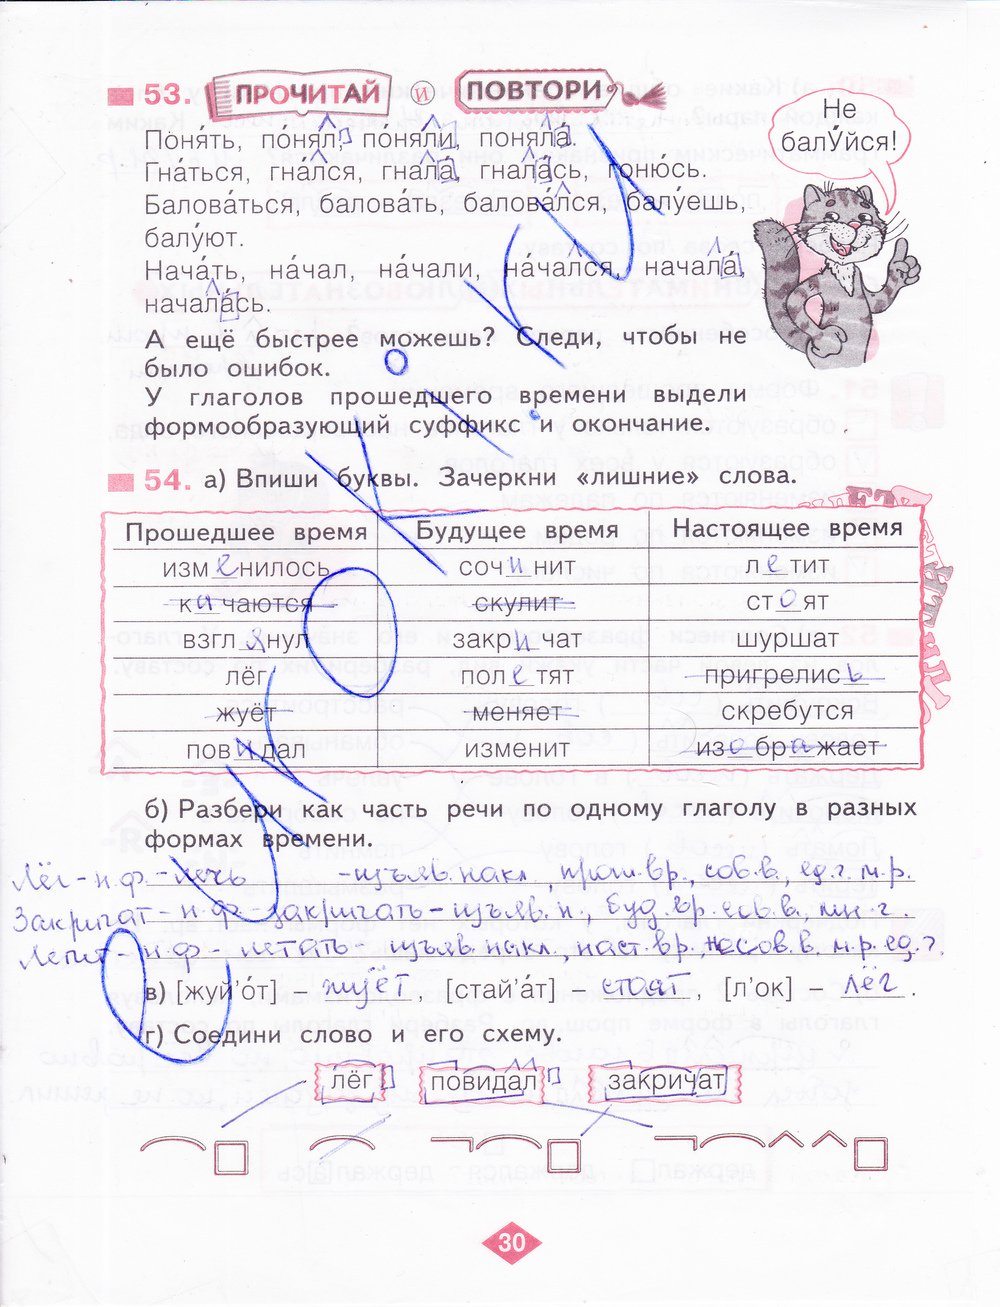 гдз 4 класс рабочая тетрадь часть 2 страница 30 русский язык Нечаева, Воскресенская